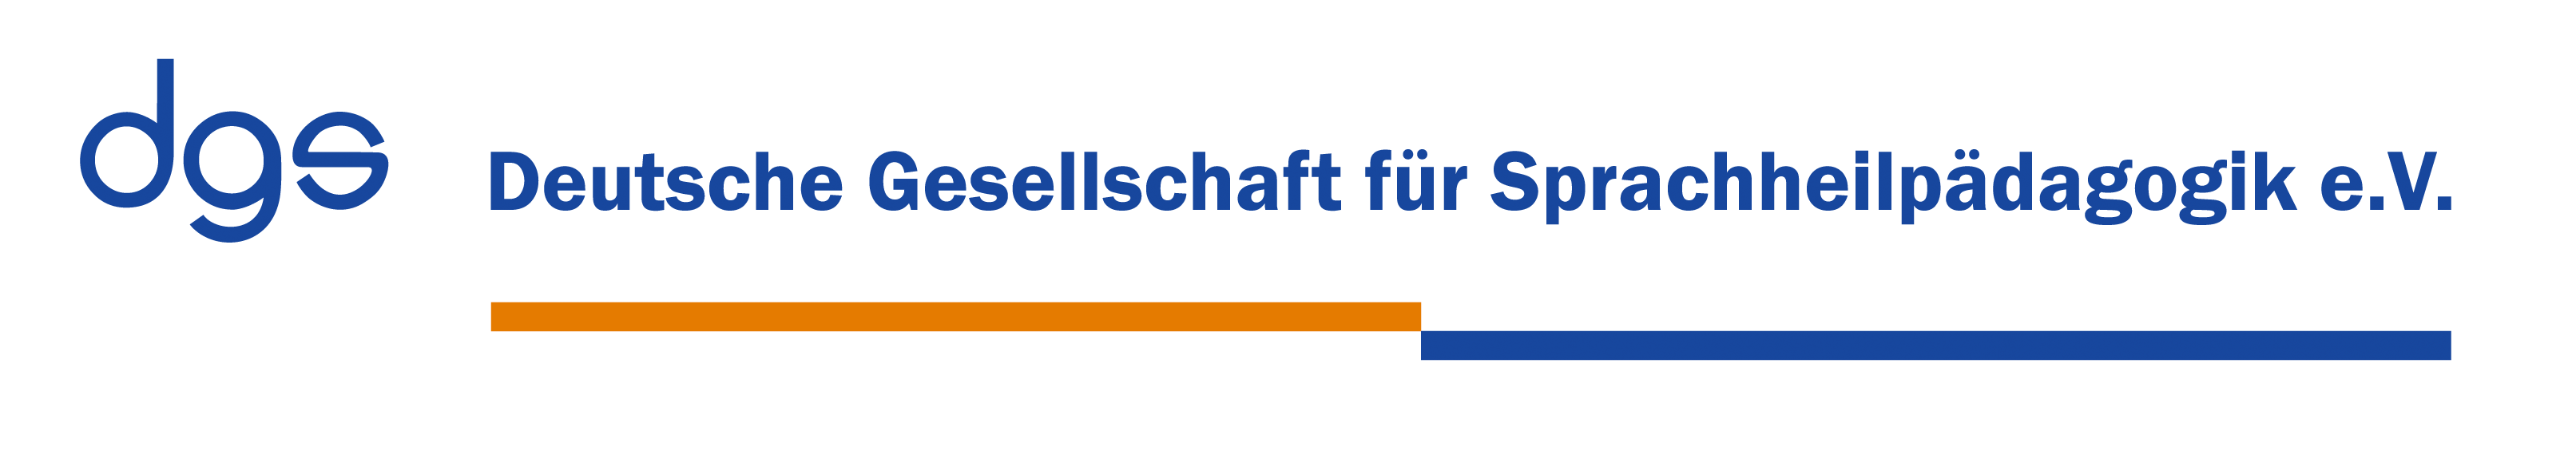 Header Deutsche Gesellschaft für Sprachheilpädagogik e.V.